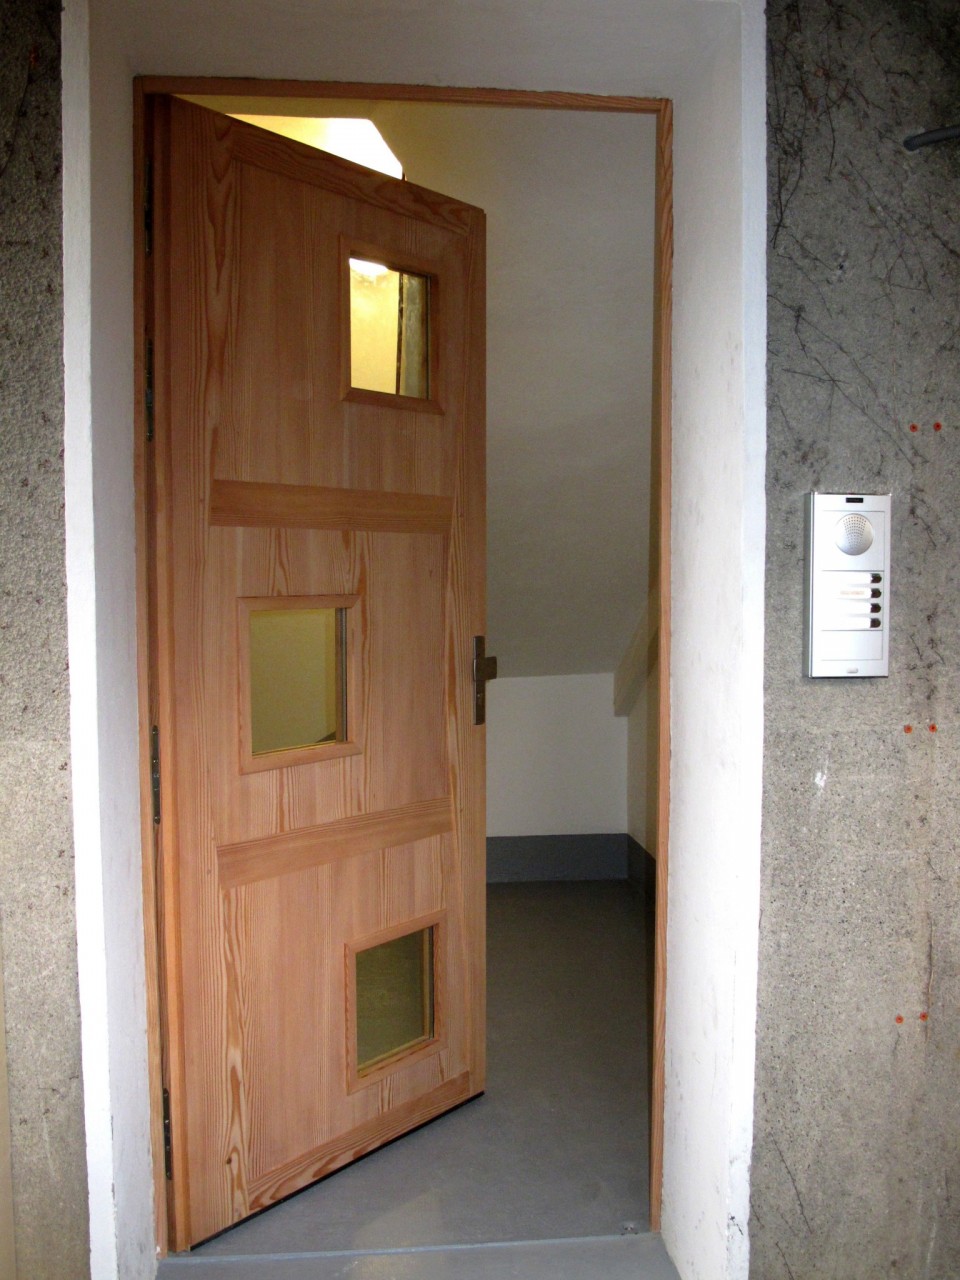 L’ouverture s'effectue par une gâche reliée à l'interphone. Ainsi chaque appartement peut ouvrir la porte à distance.